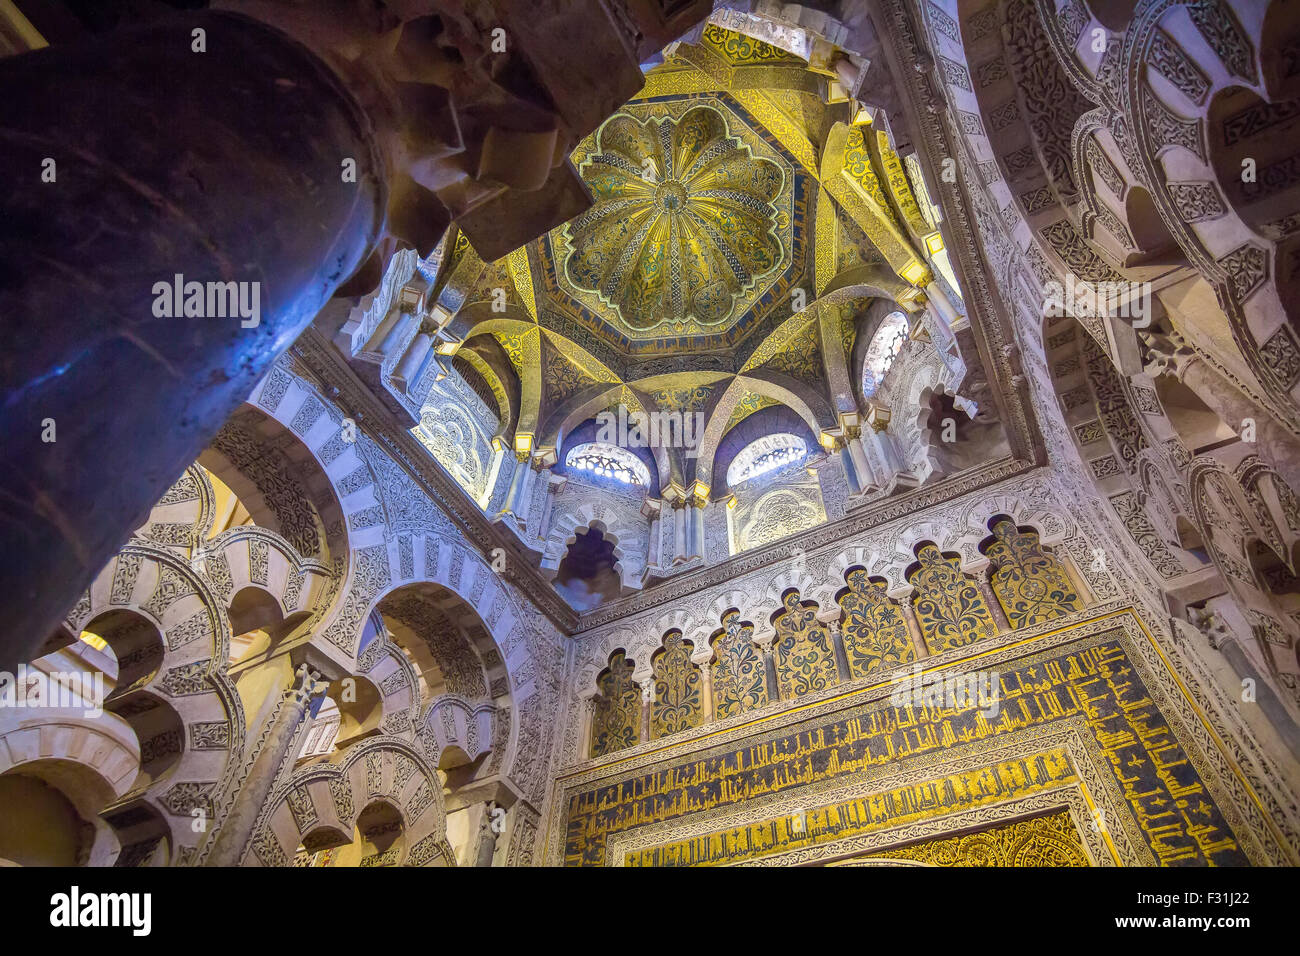 Estilo árabe muy techos decorados en la Mezquita de Córdoba, España Foto de stock